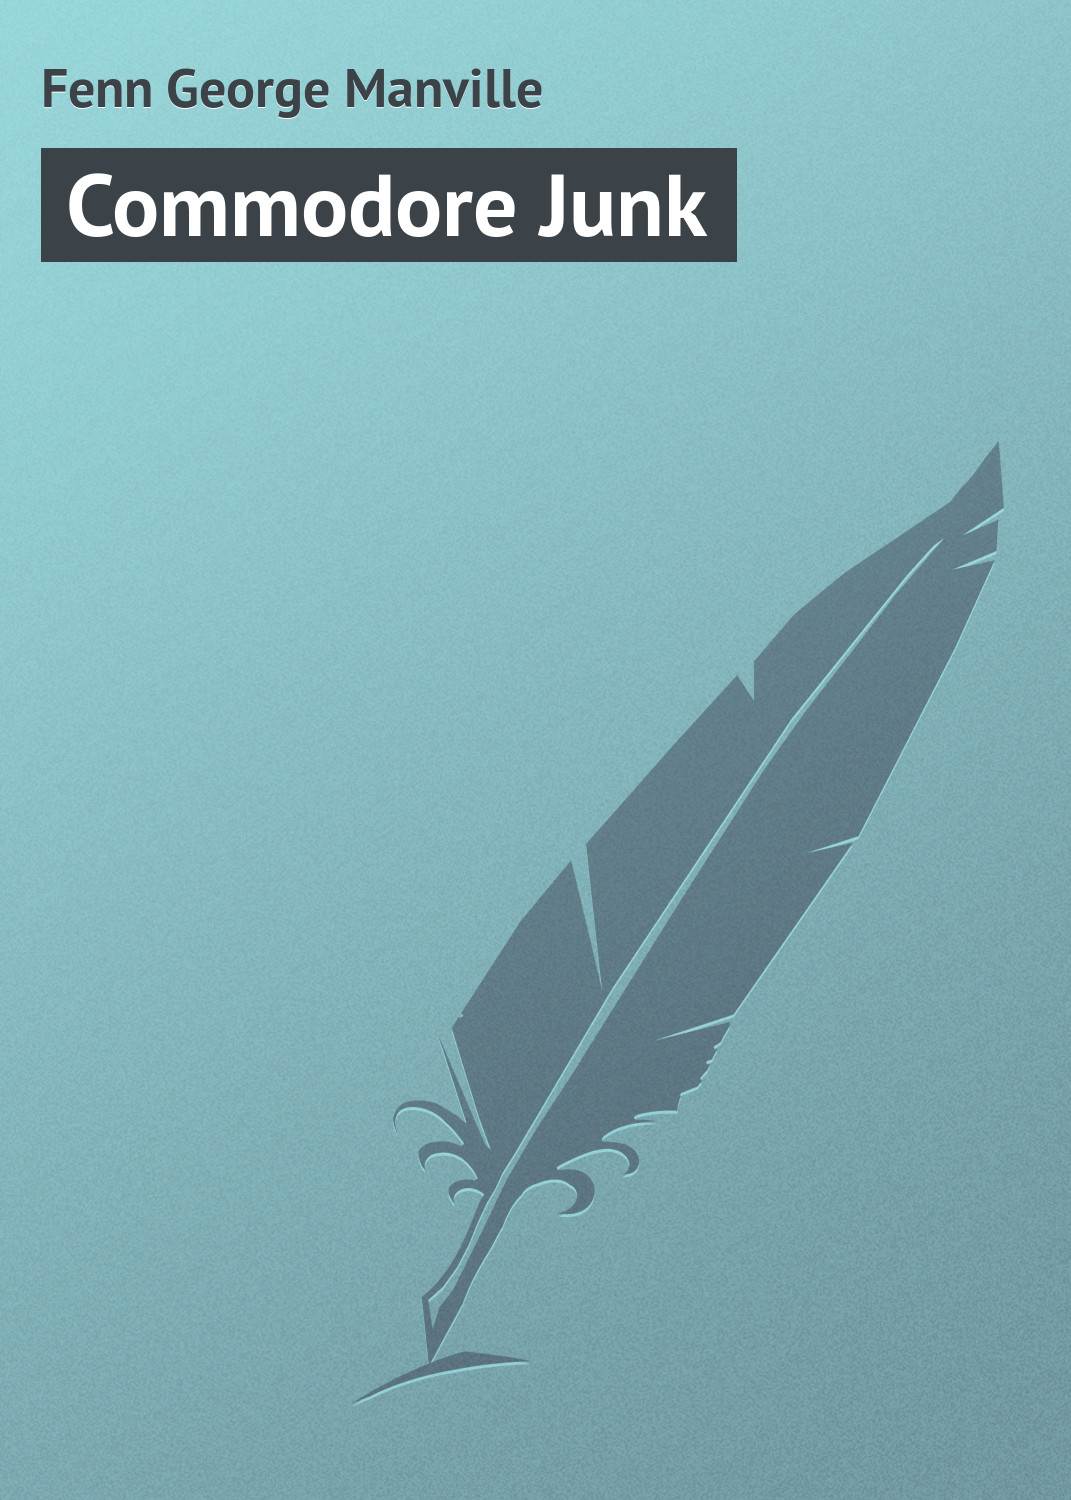 Книга Commodore Junk из серии , созданная George Fenn, может относится к жанру Зарубежная классика. Стоимость электронной книги Commodore Junk с идентификатором 23165219 составляет 5.99 руб.